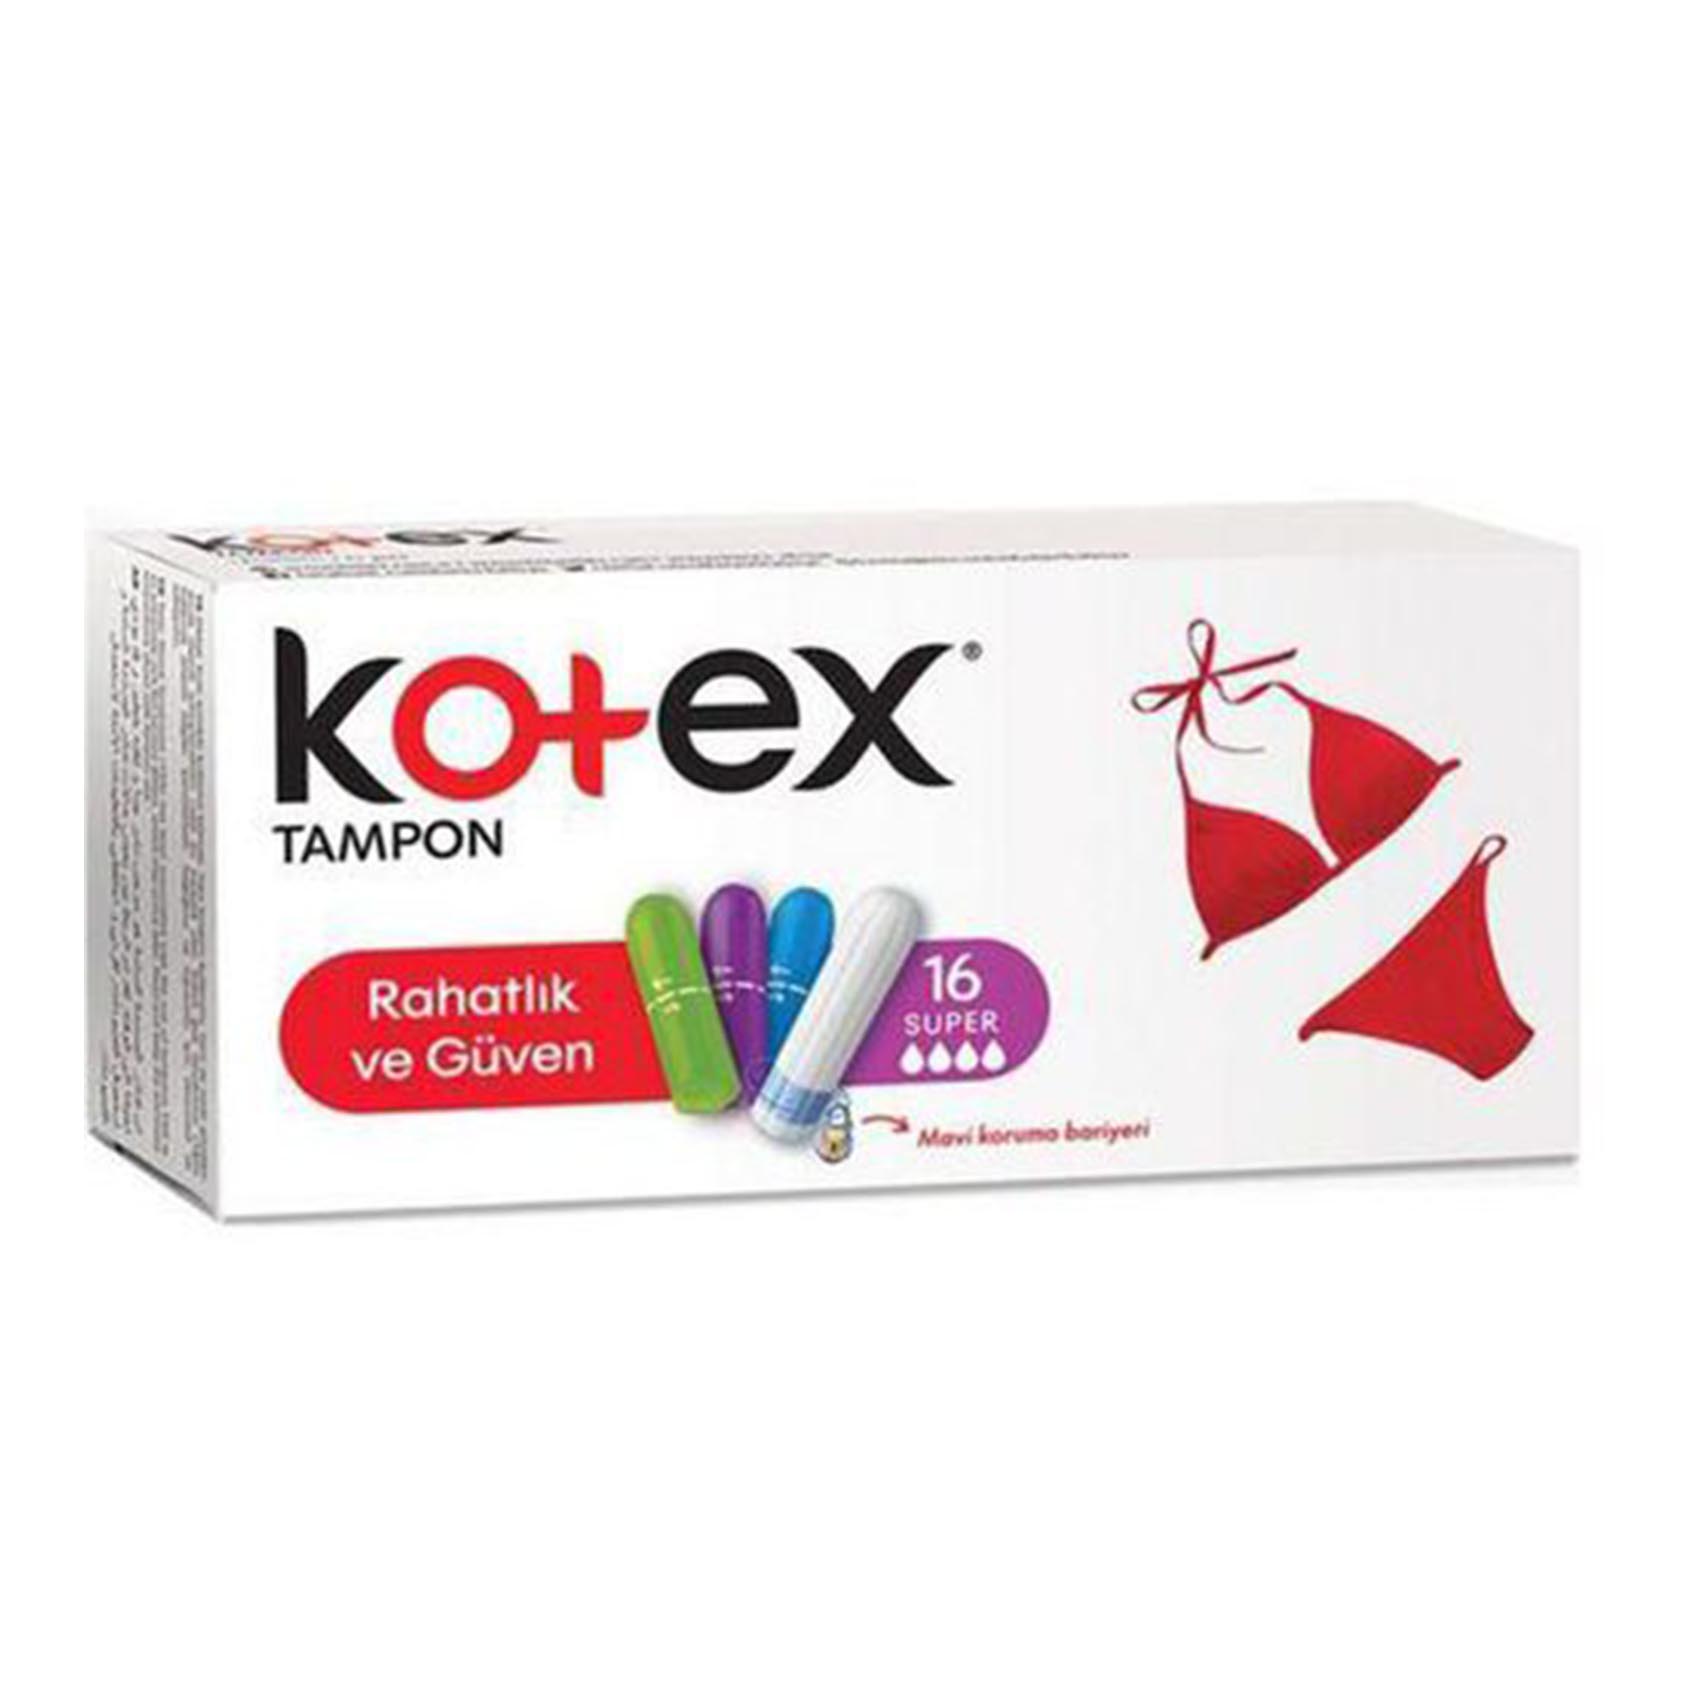 Kotex Woman Tampons Super 16S